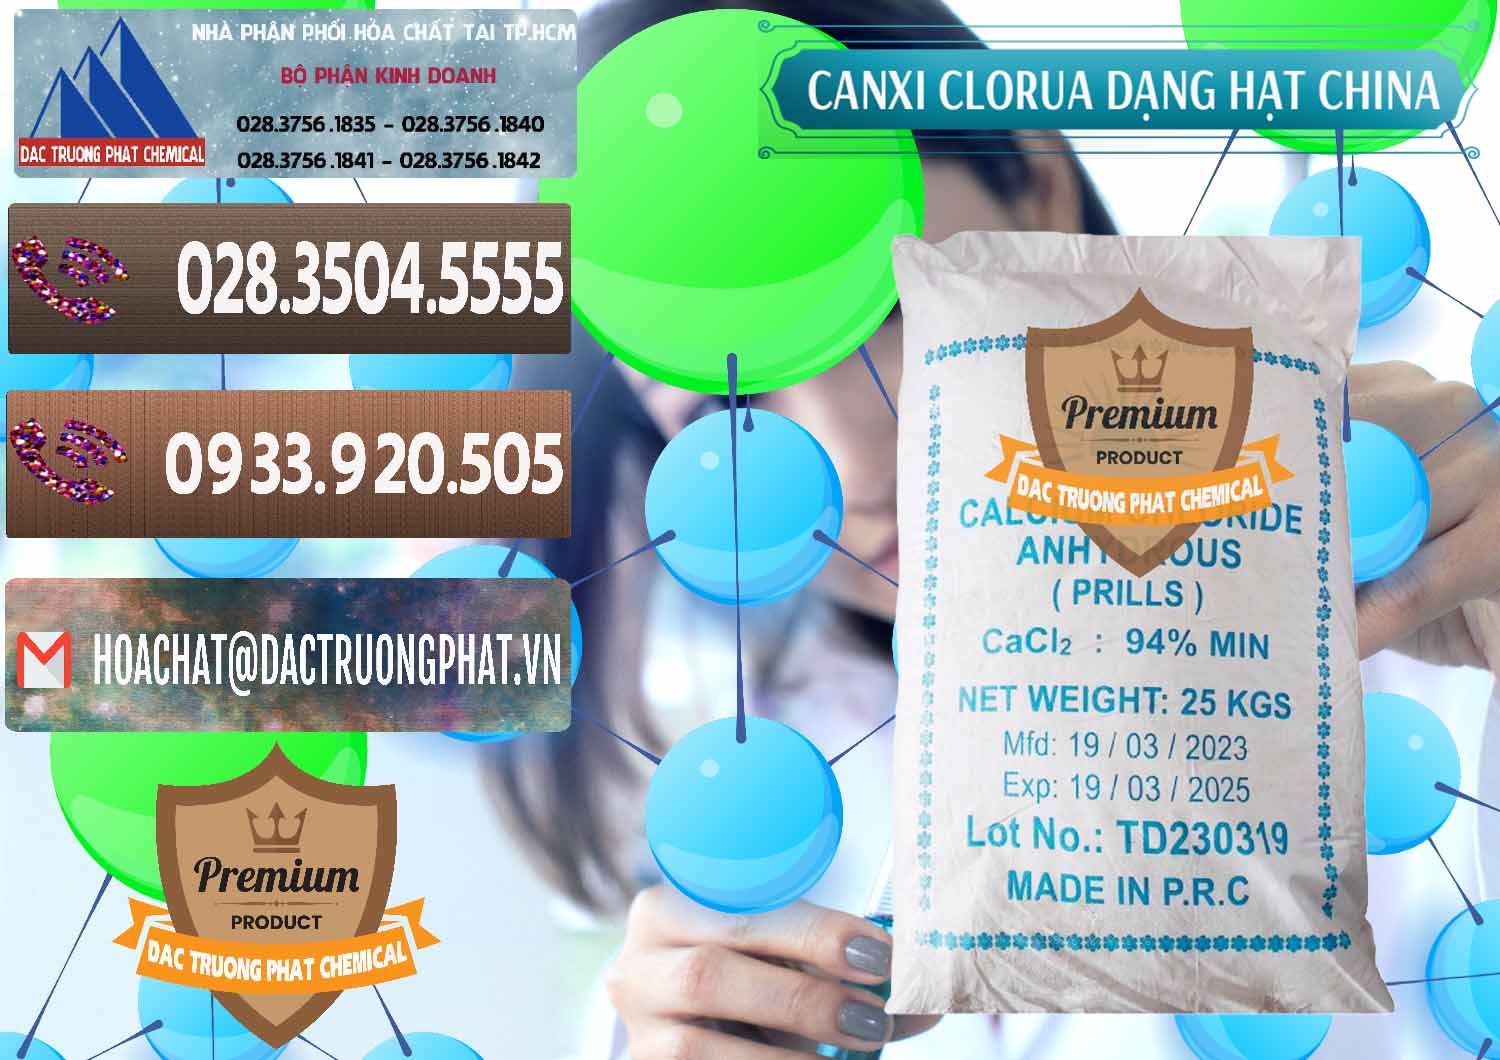 Nơi bán & cung ứng CaCl2 – Canxi Clorua 94% Dạng Hạt Trung Quốc China - 0373 - Chuyên kinh doanh ( phân phối ) hóa chất tại TP.HCM - hoachatviet.net